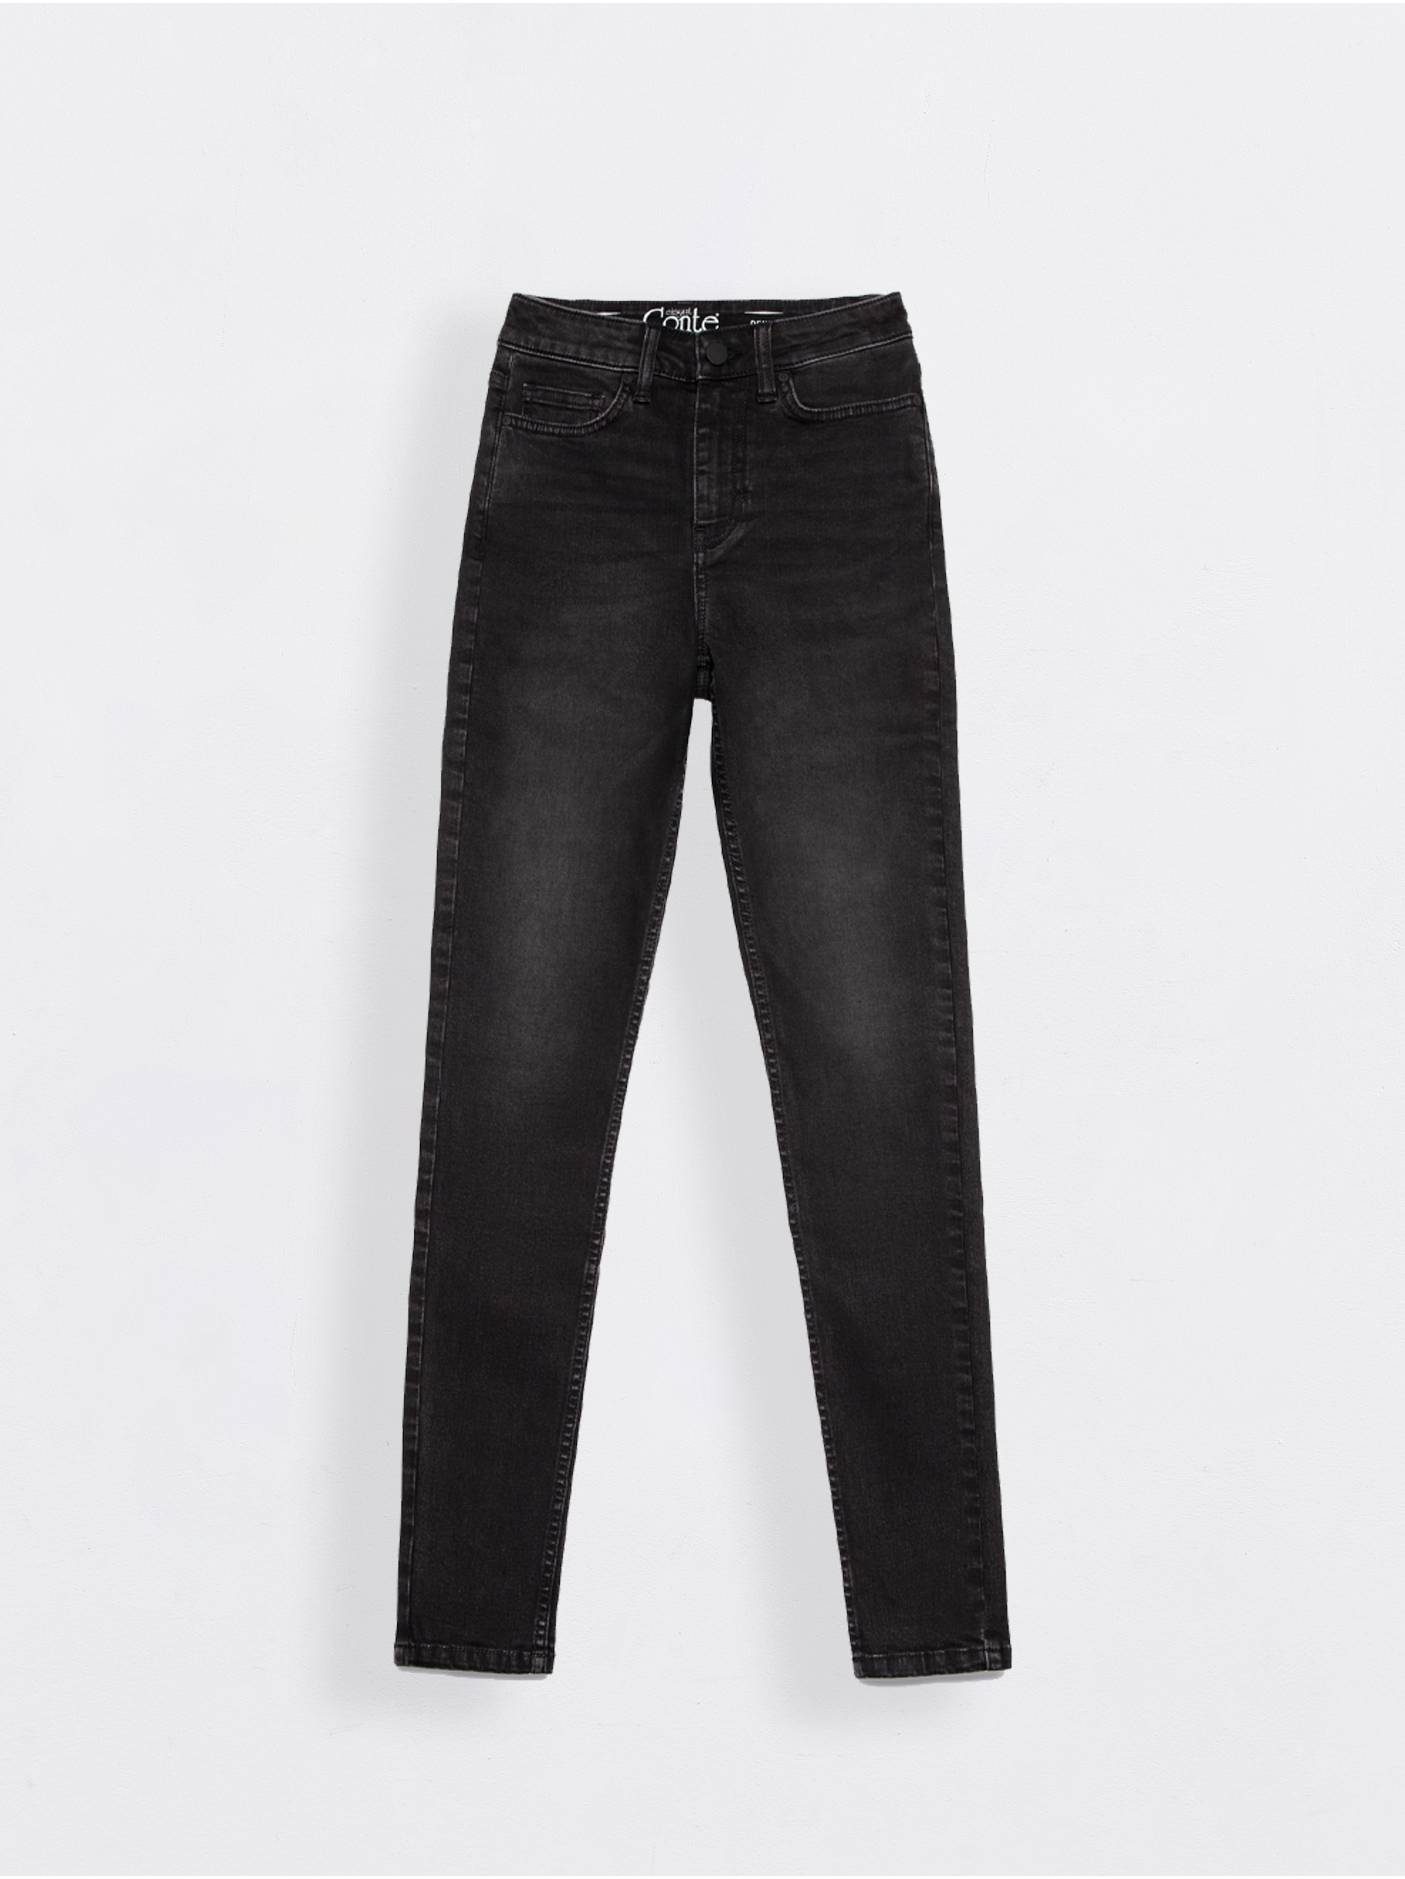 Моделирующие eco-friendly джинсы skinny CON-353 с высокой посадкой Conte ⭐️, цвет washed black, размер 164-102 - фото 1